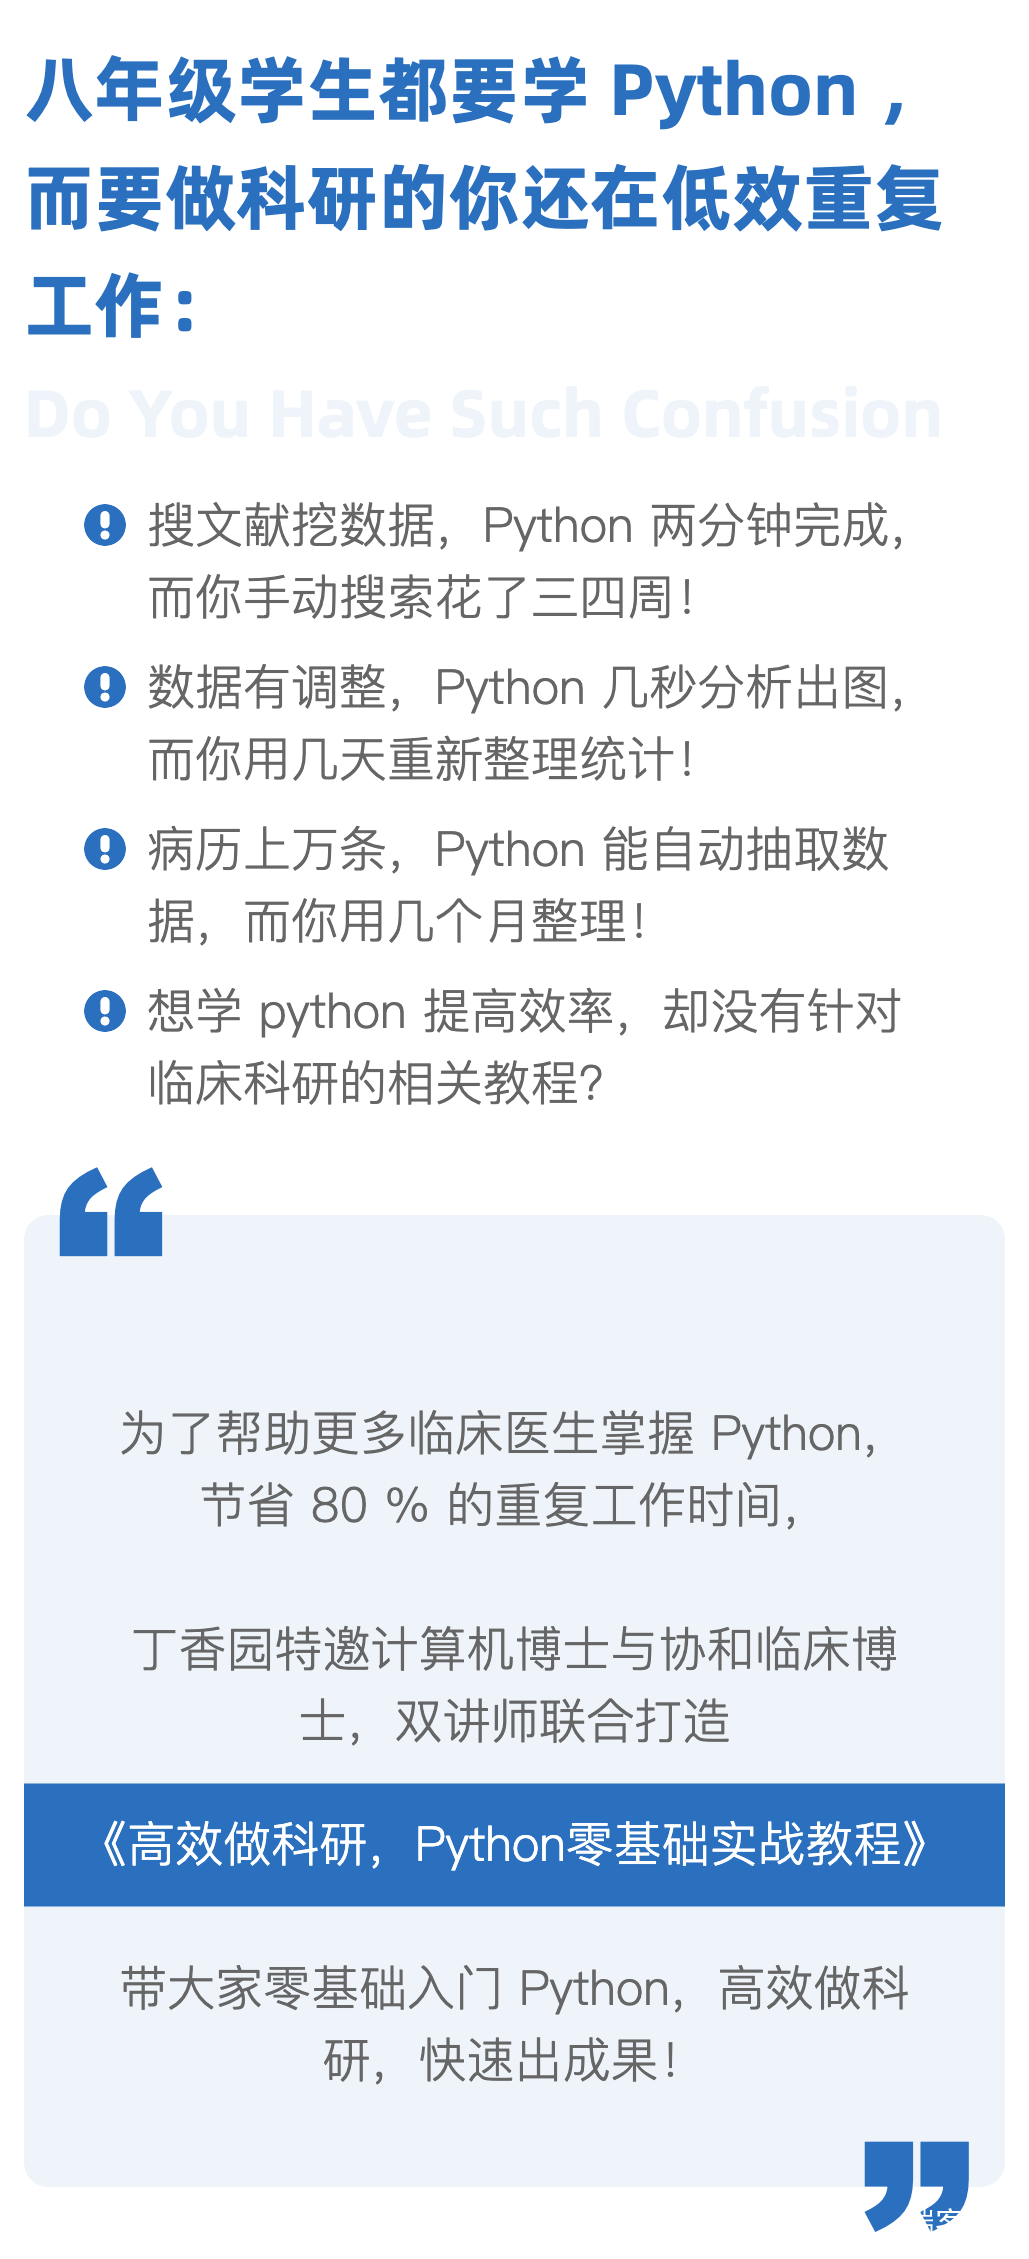 高效做科研-Python零基础教程含讲义+源代码+安装文件